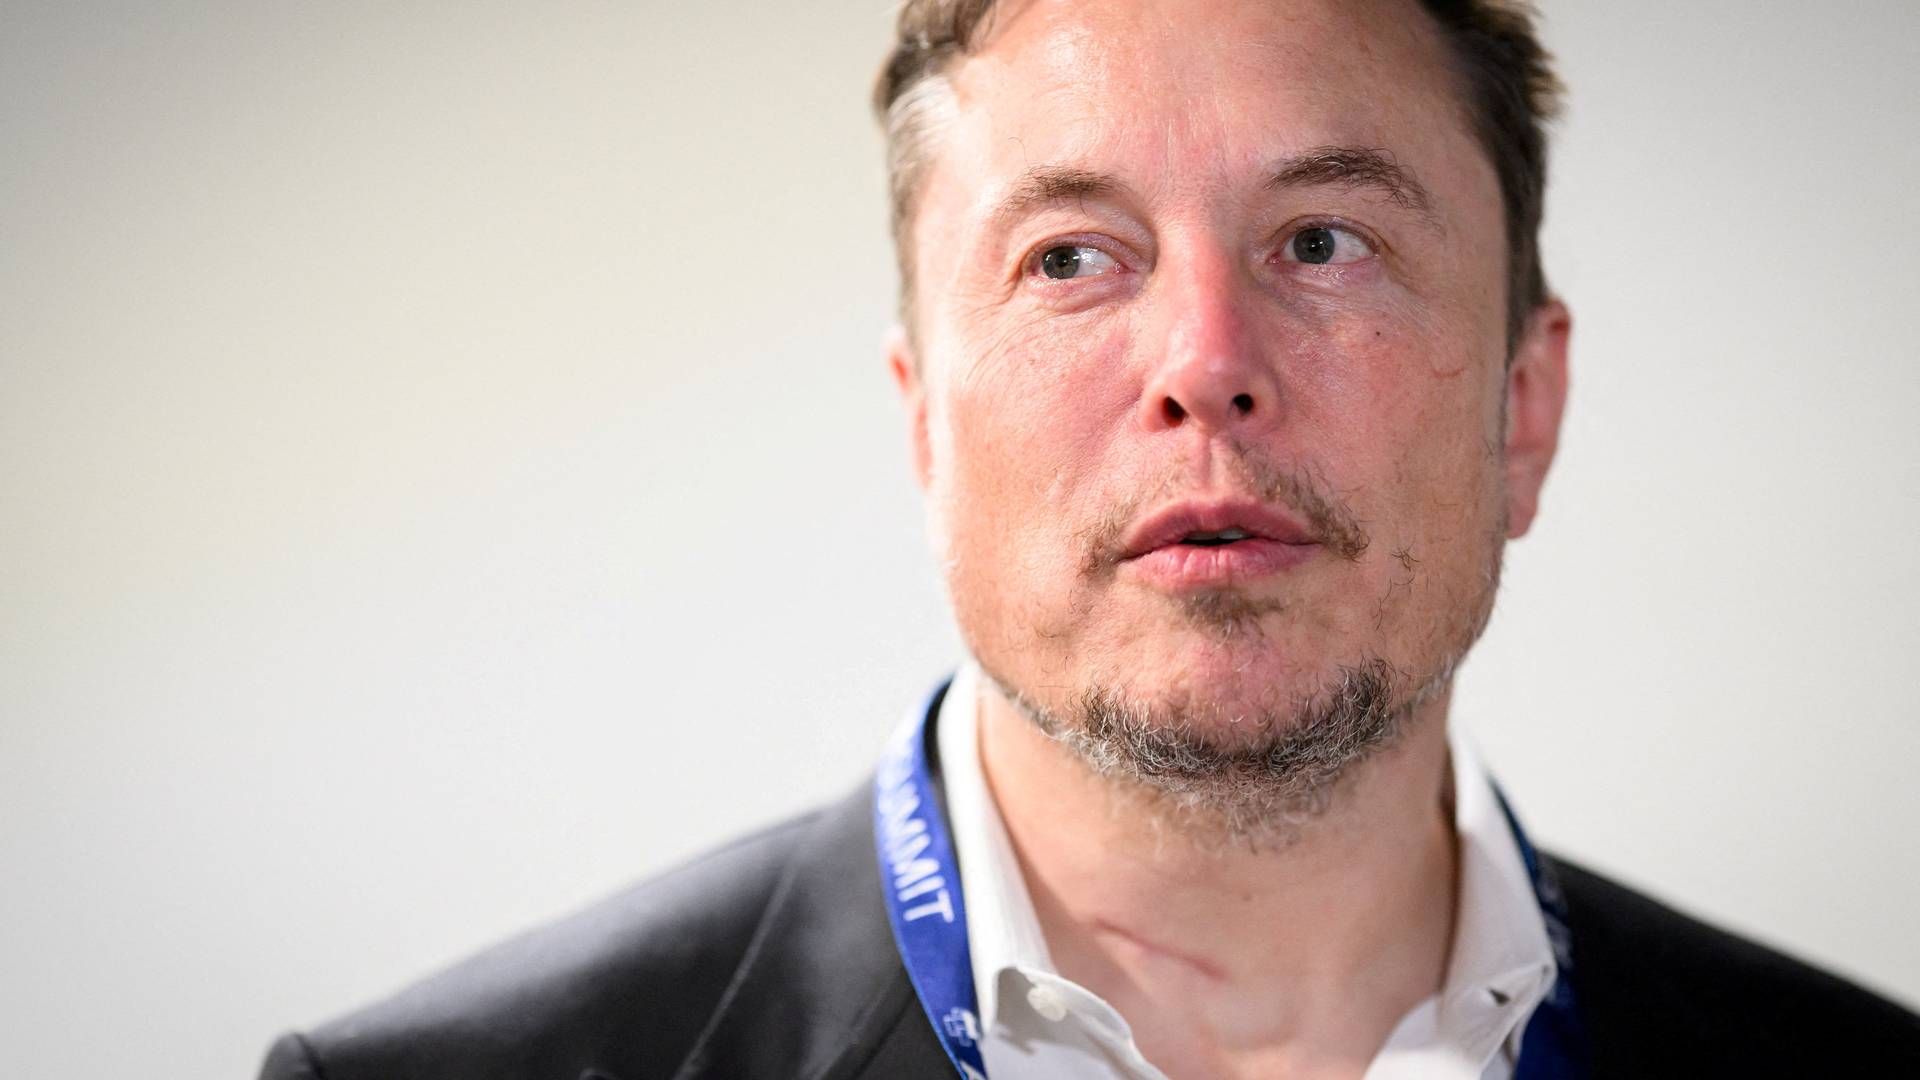 Ifølge nyhedsbureauet Reuters sagsøger Elon Musk ngo’en for bagvaskelse, efter der er bragt en række kritiske historier, der har fået annoncører til at trække sig fra platformen. | Foto: Leon Neal/Pool via REUTERS/Ritzau Scanpix